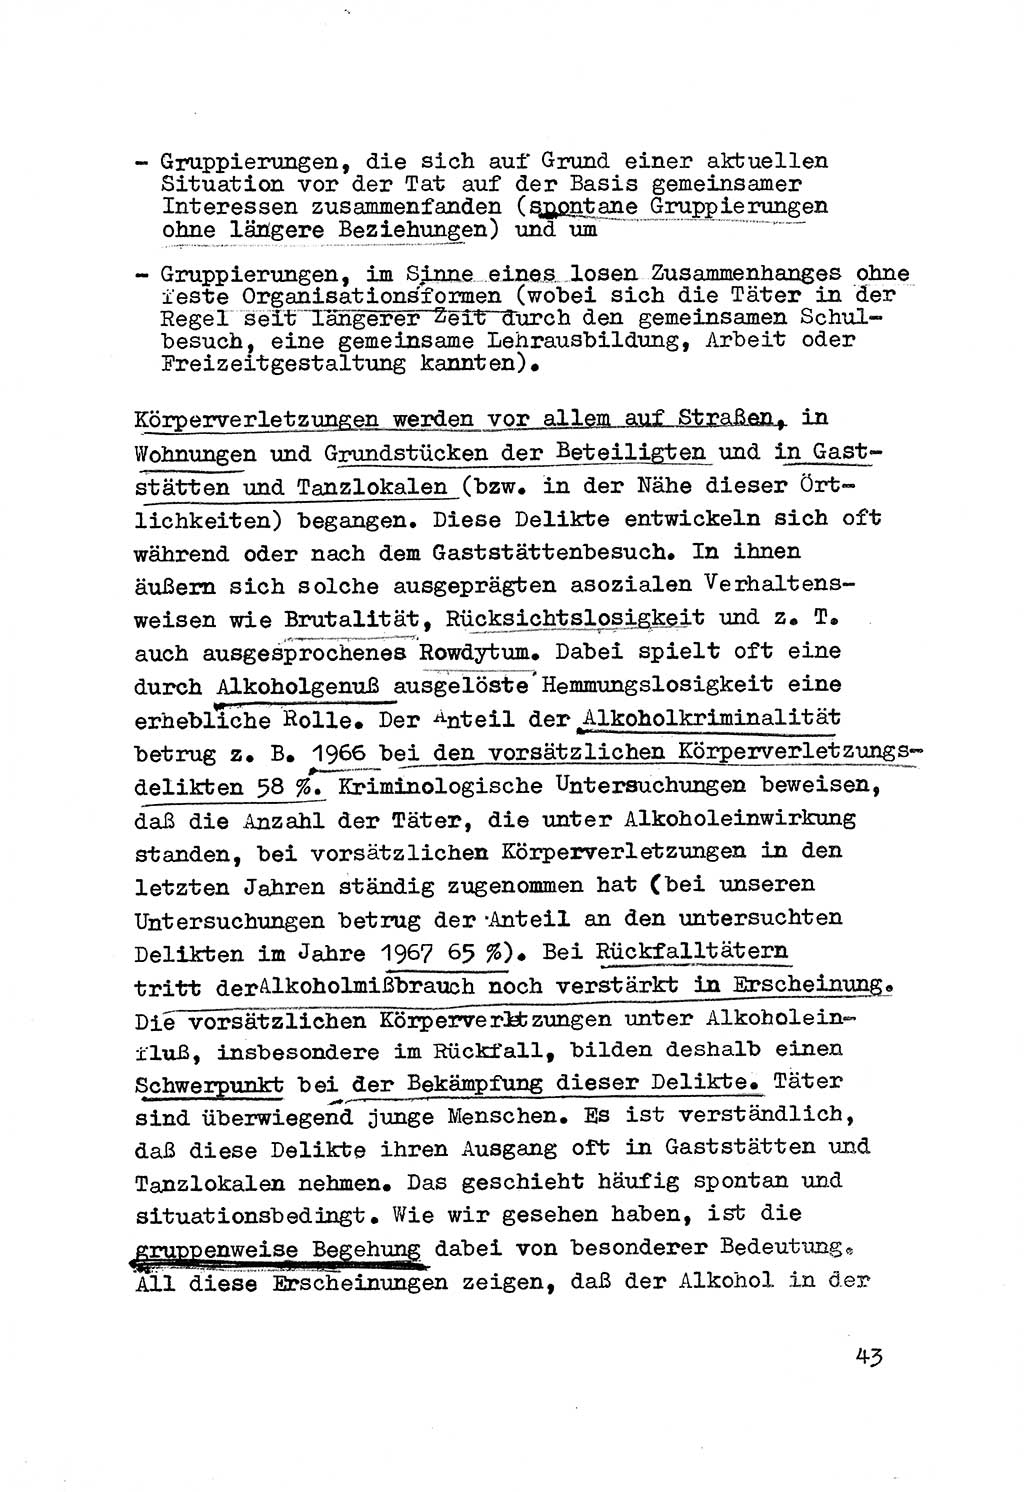 Strafrecht der DDR (Deutsche Demokratische Republik), Besonderer Teil, Lehrmaterial, Heft 3 1969, Seite 43 (Strafr. DDR BT Lehrmat. H. 3 1969, S. 43)